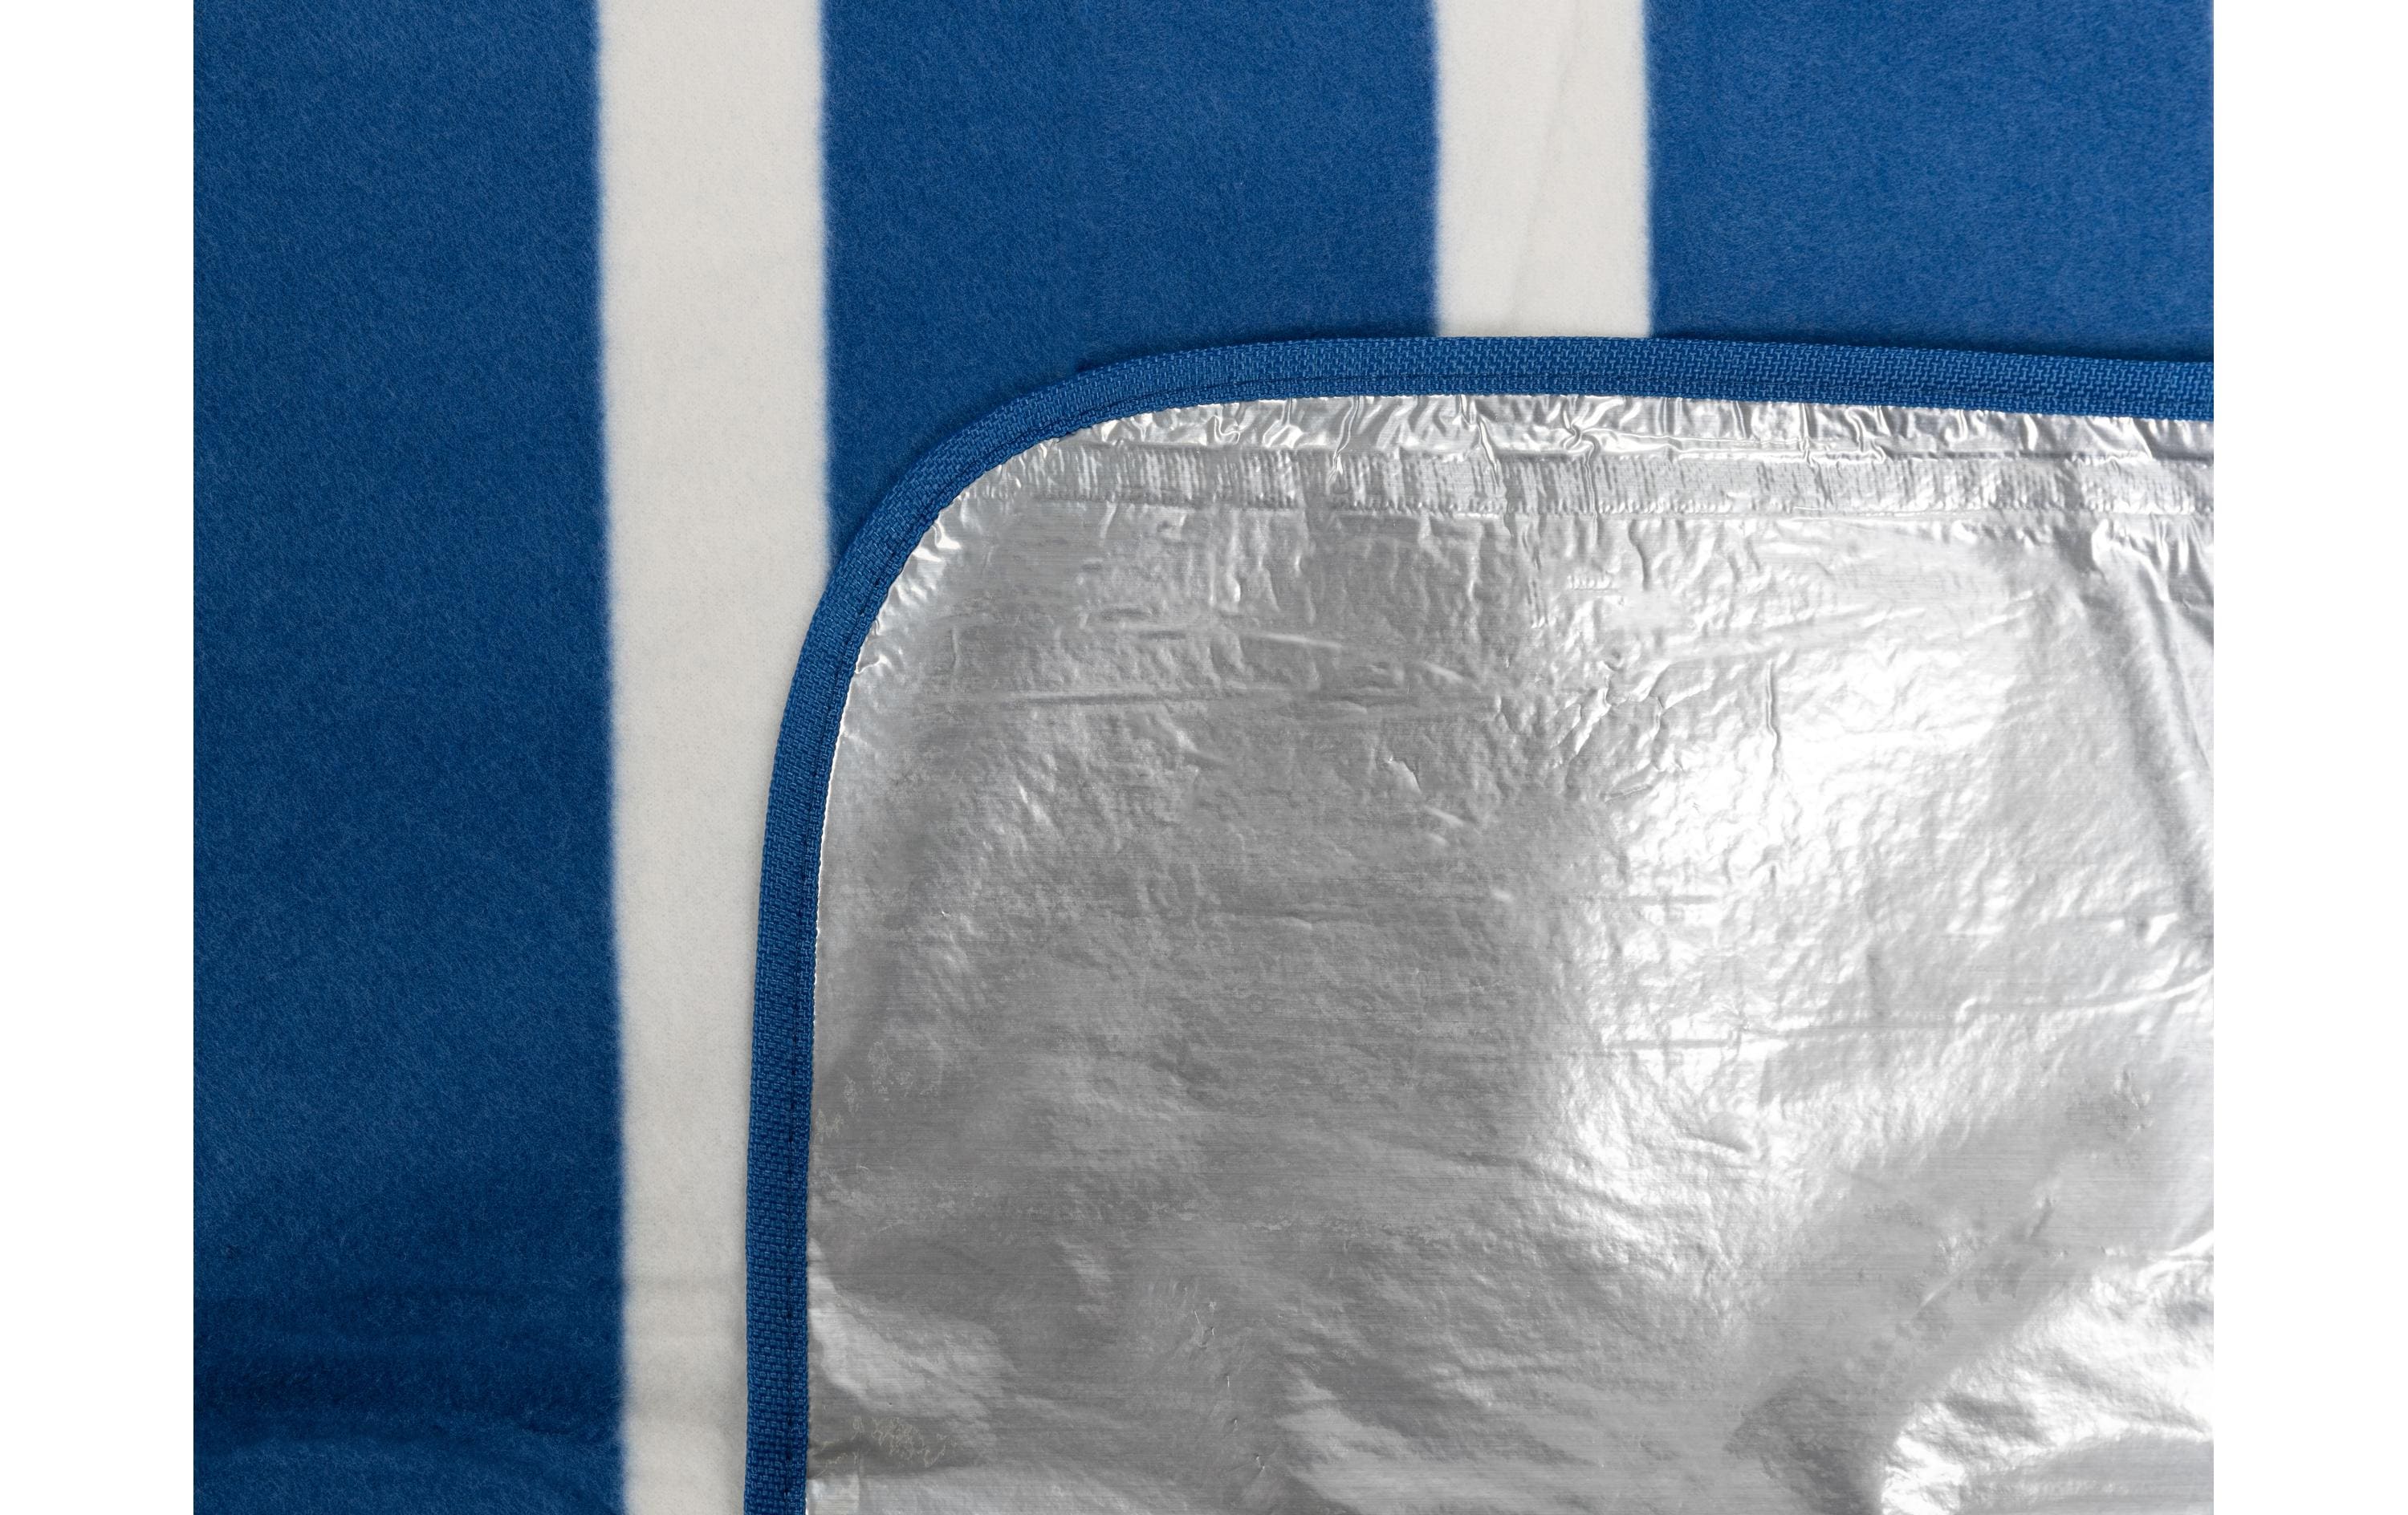 KOOR Picknickdecke Stripes blue 200 x 200 cm